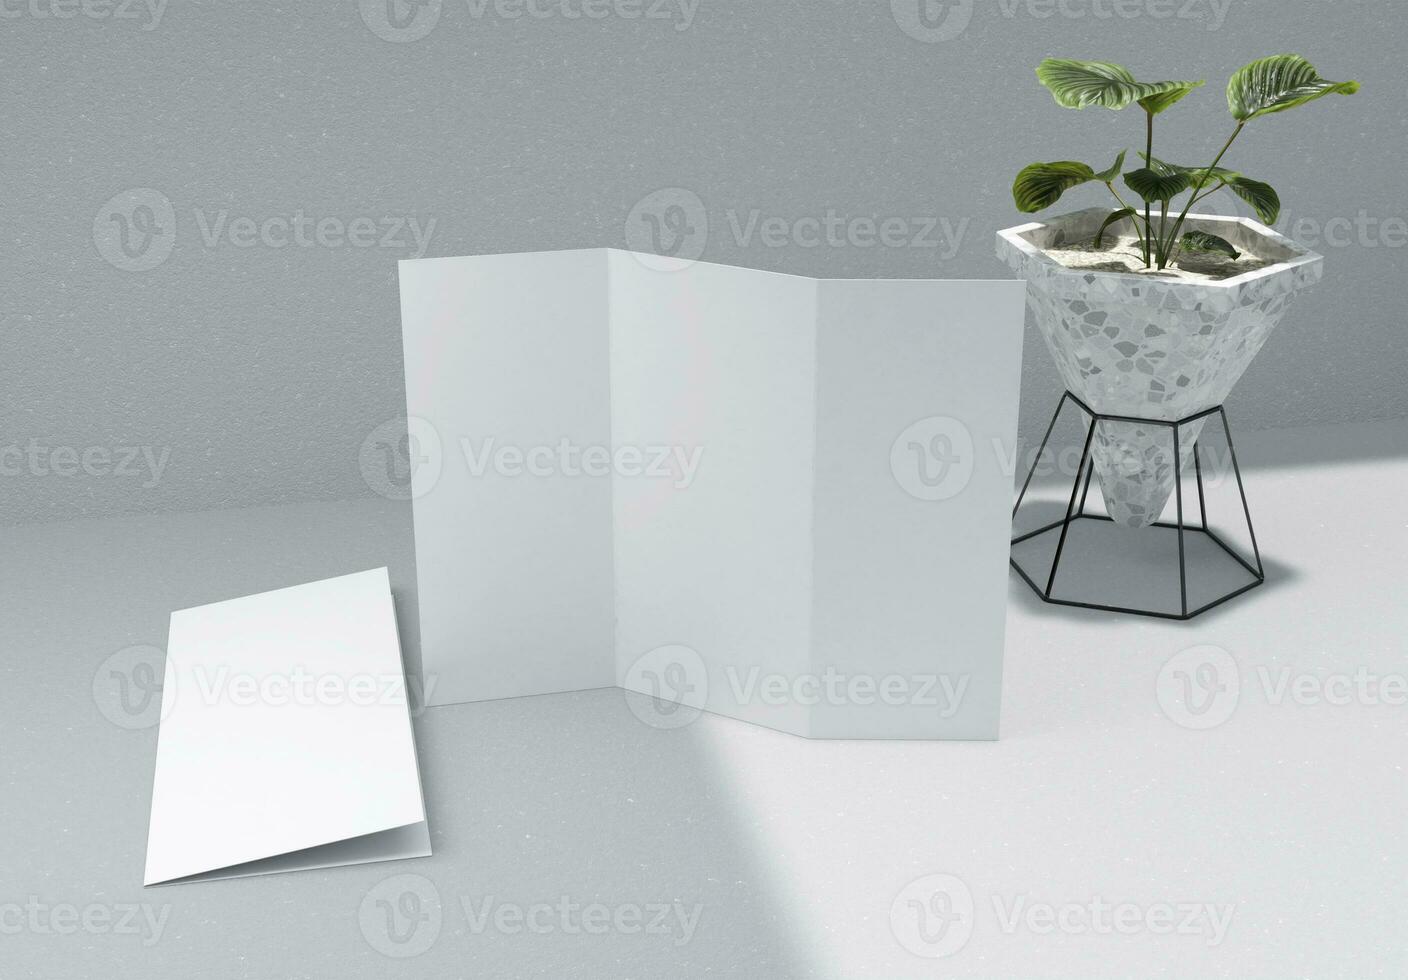 en tom trifold broschyr med 2 vika ihop broschyr och växt Inklusive papper textur och betong bakgrund, bra för mockups. foto